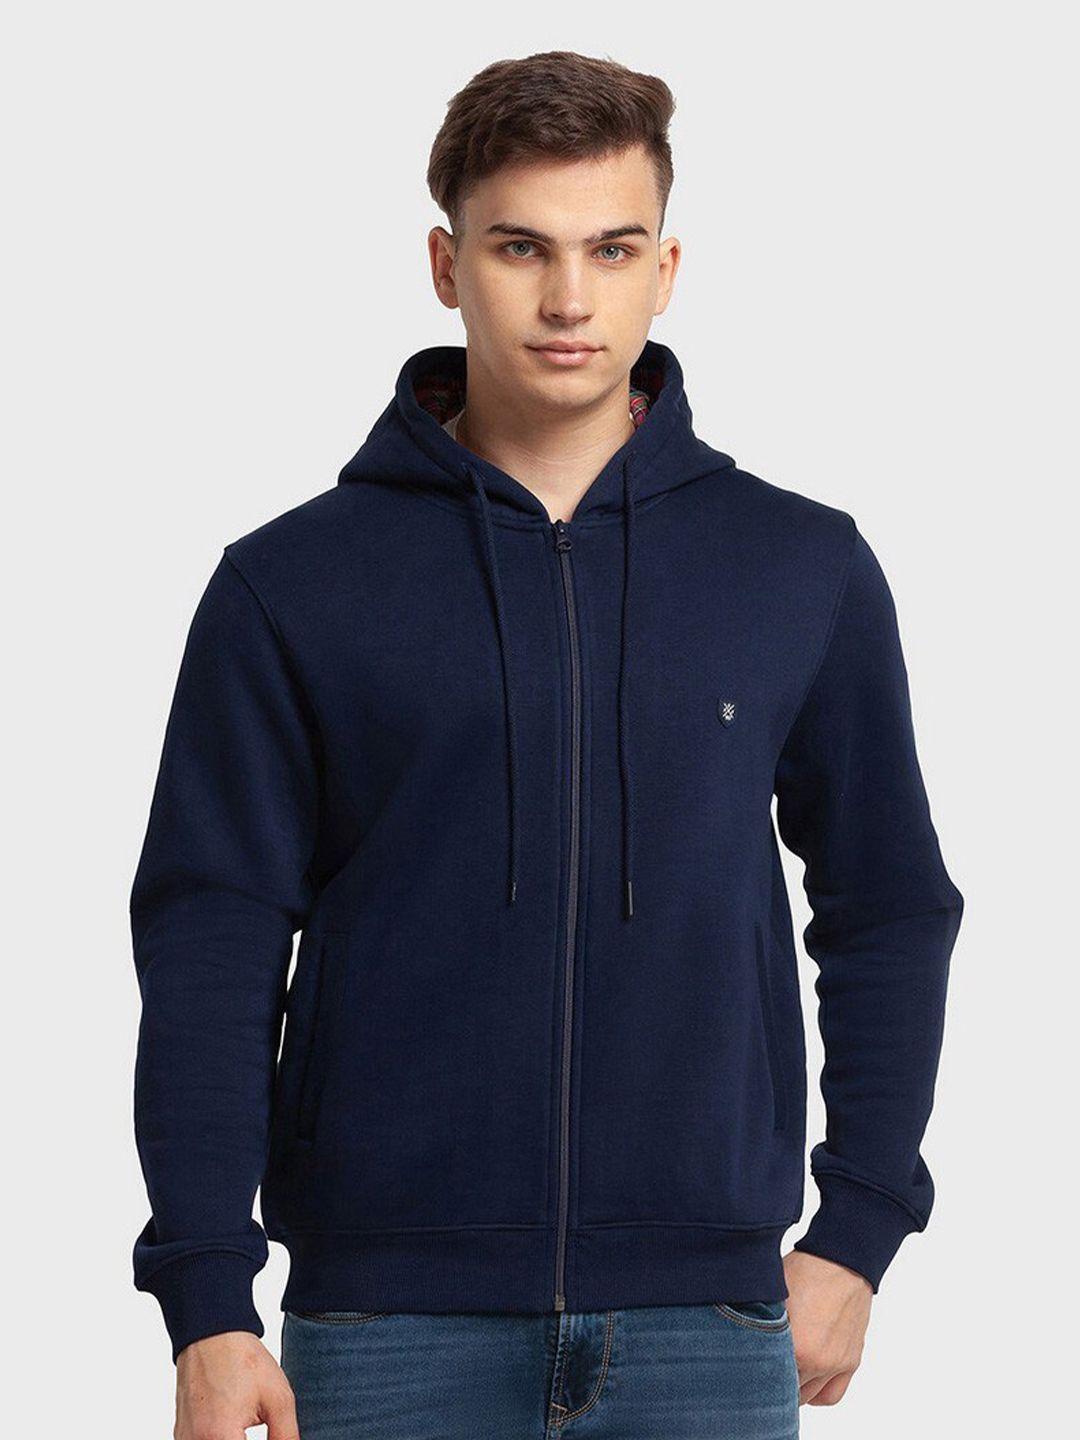 colorplus-men-navy-blue-hooded-sweatshirt